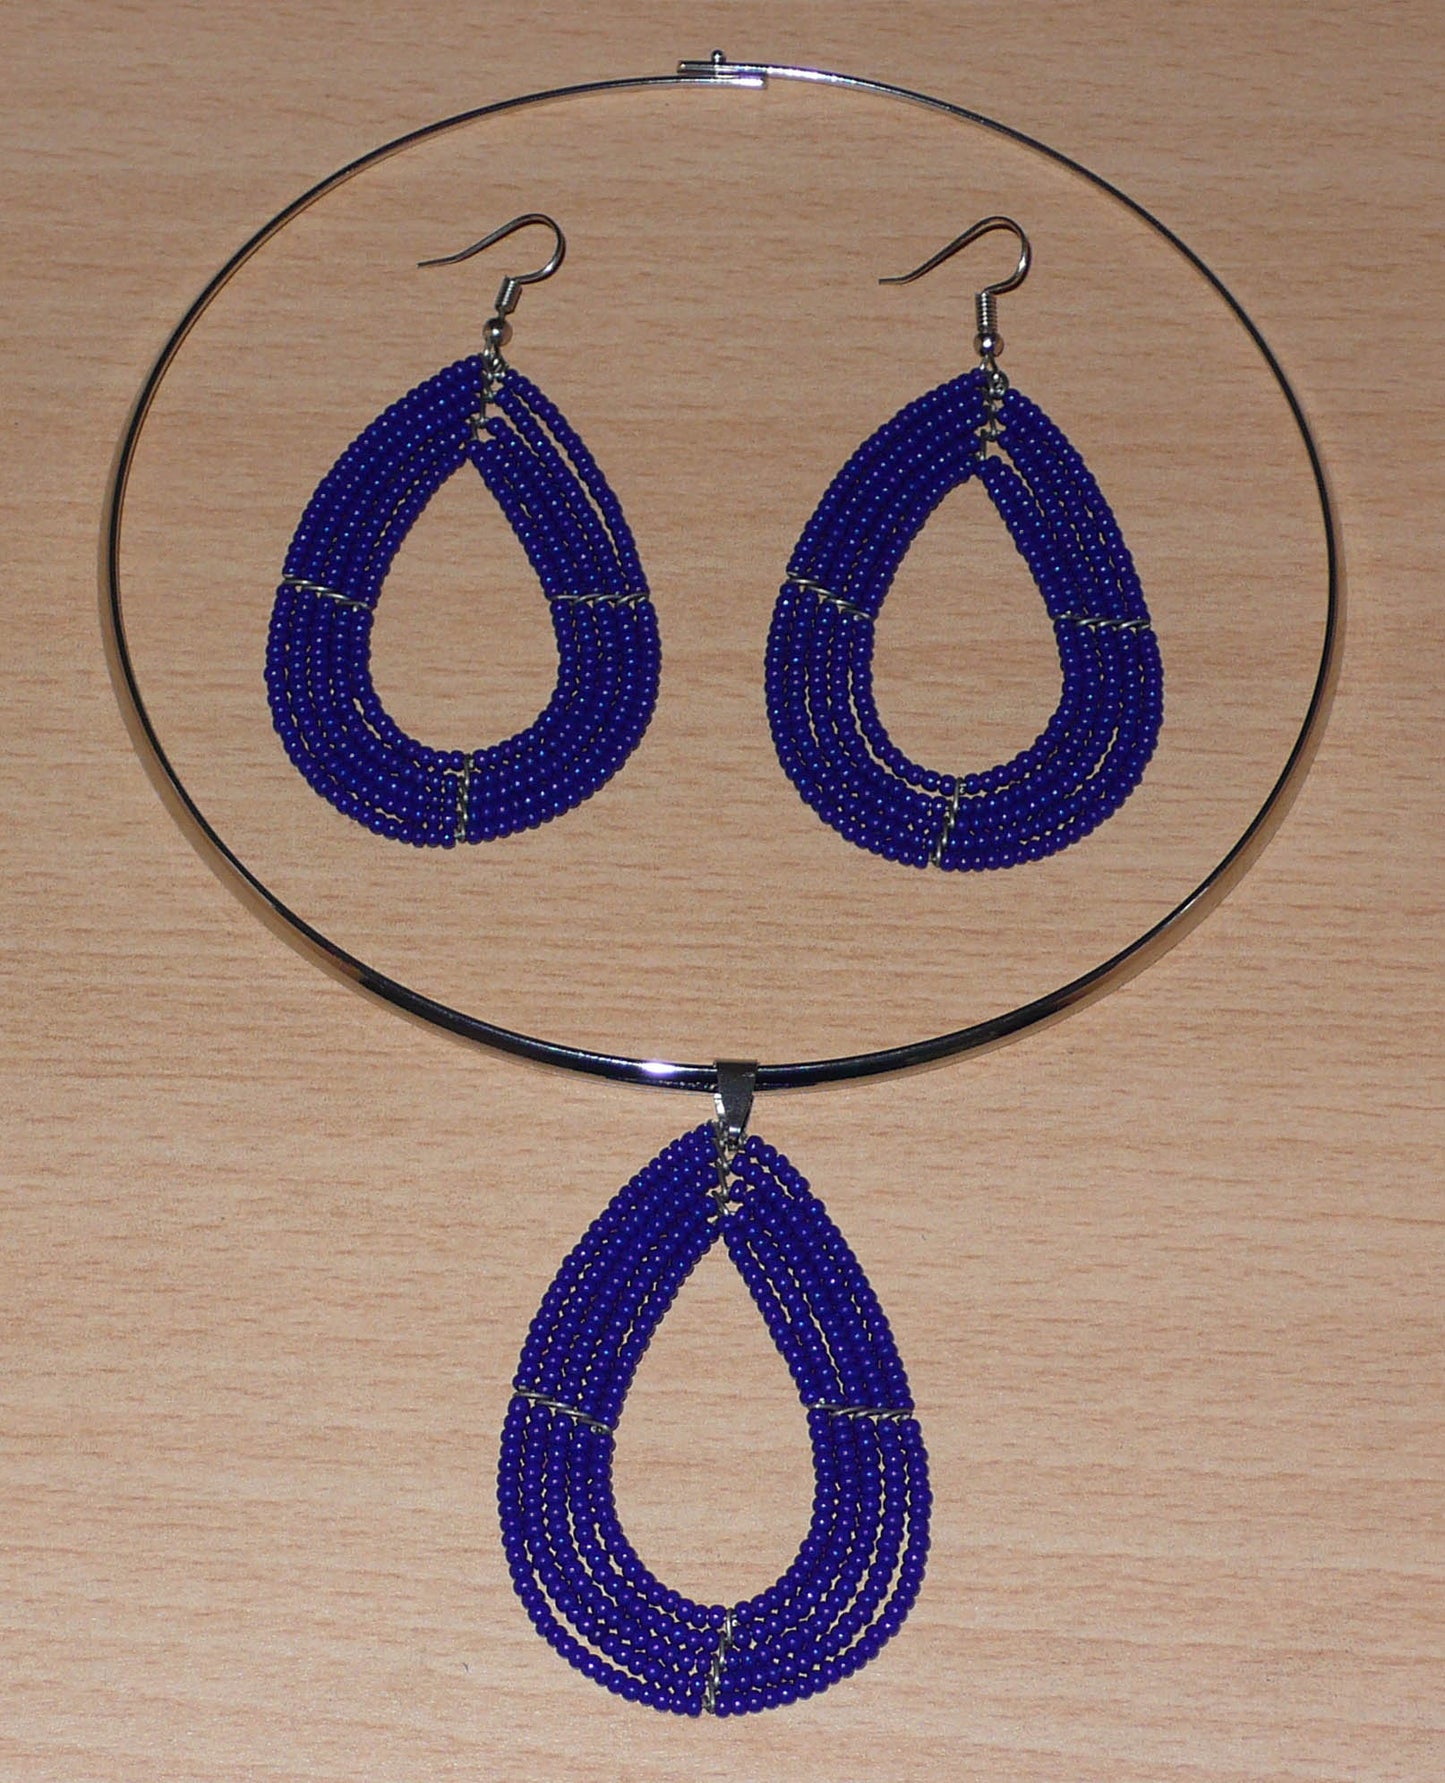 Parure contemporaine très chic de bijoux Massai comprenant un collier ras-de-cou en laiton argenté agrémenté d'un pendentif en forme de goutte fait de perles de rocaille bleu marine, ainsi qu'une paire de boucles d'oreilles assorties. Timeless Fineries